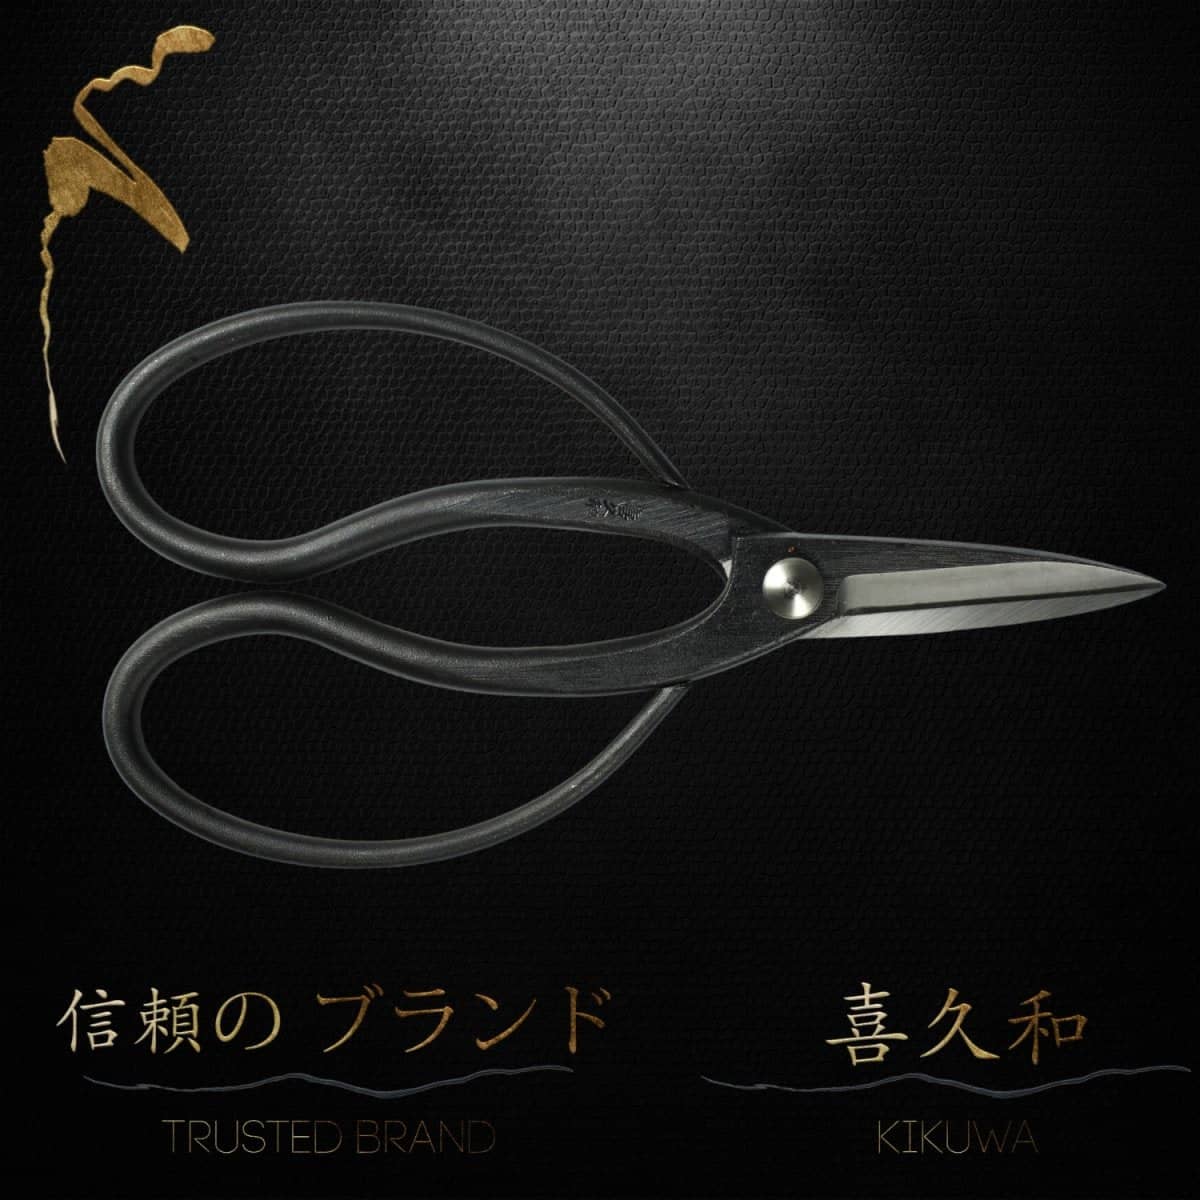 Kikuwa 180mm Aogami Steel Craftsman Professional Bonsai Scissors